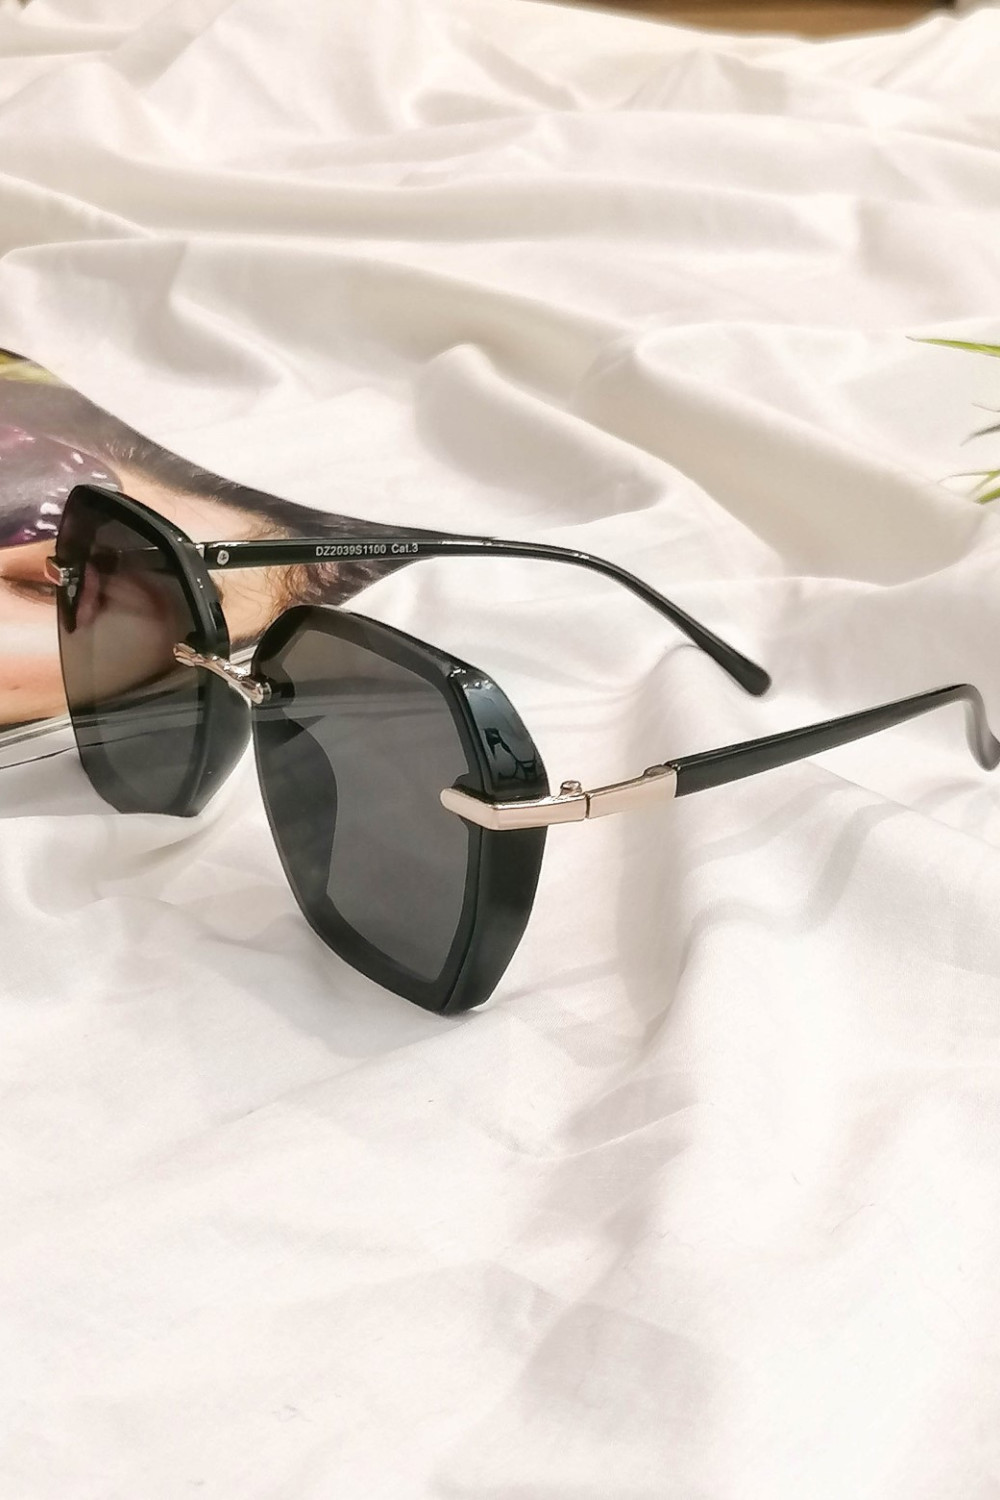 Γυναικεία μαύρα πολυγωνικά γυαλιά ηλίου με κοκκάλινο σκελετό Premium S1100L